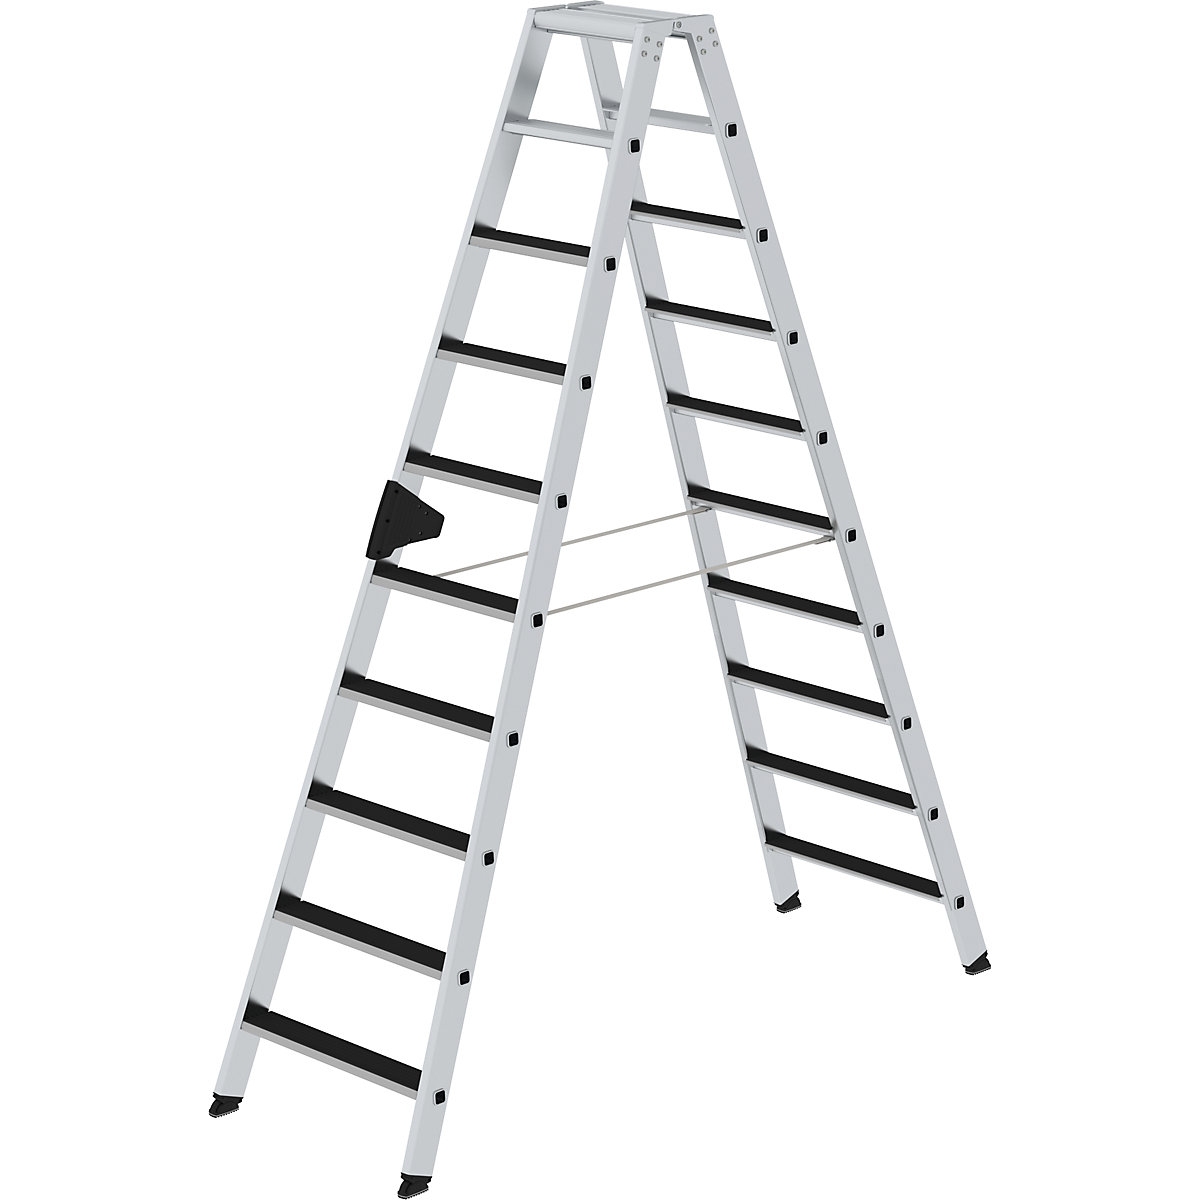 MUNK Stufen-Stehleiter CLIP-STEP, beidseitig begehbar, geriffelt, 2 x 10 Stufen